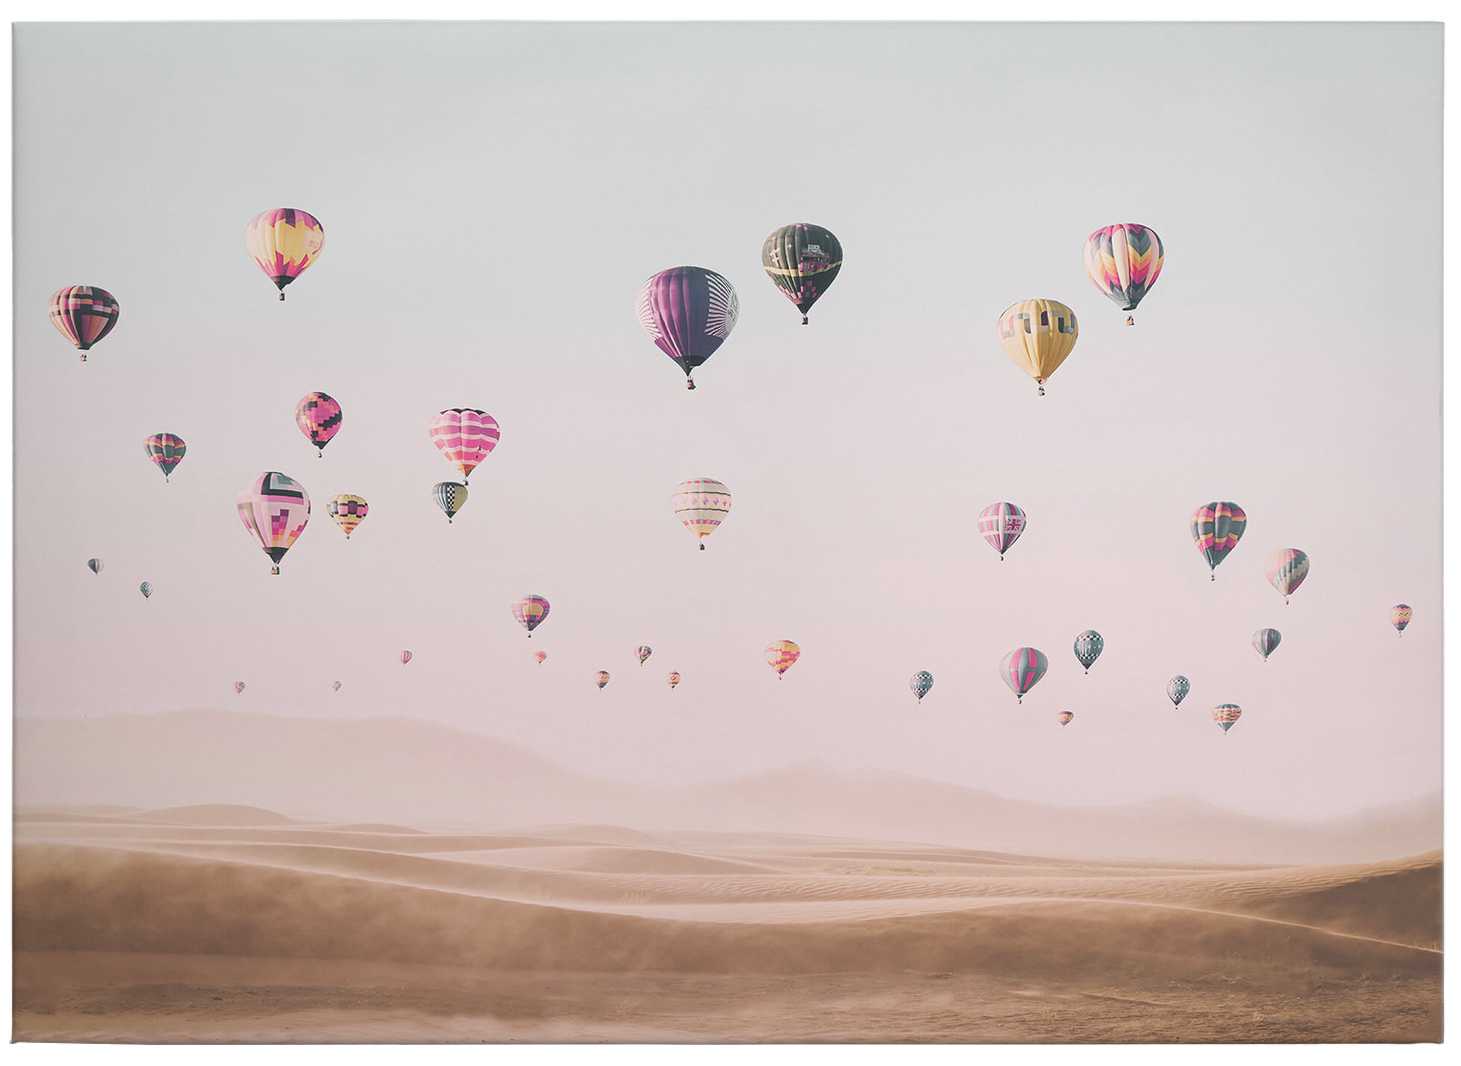             Canvas print sky and hot air balloon, sisi & seb
        